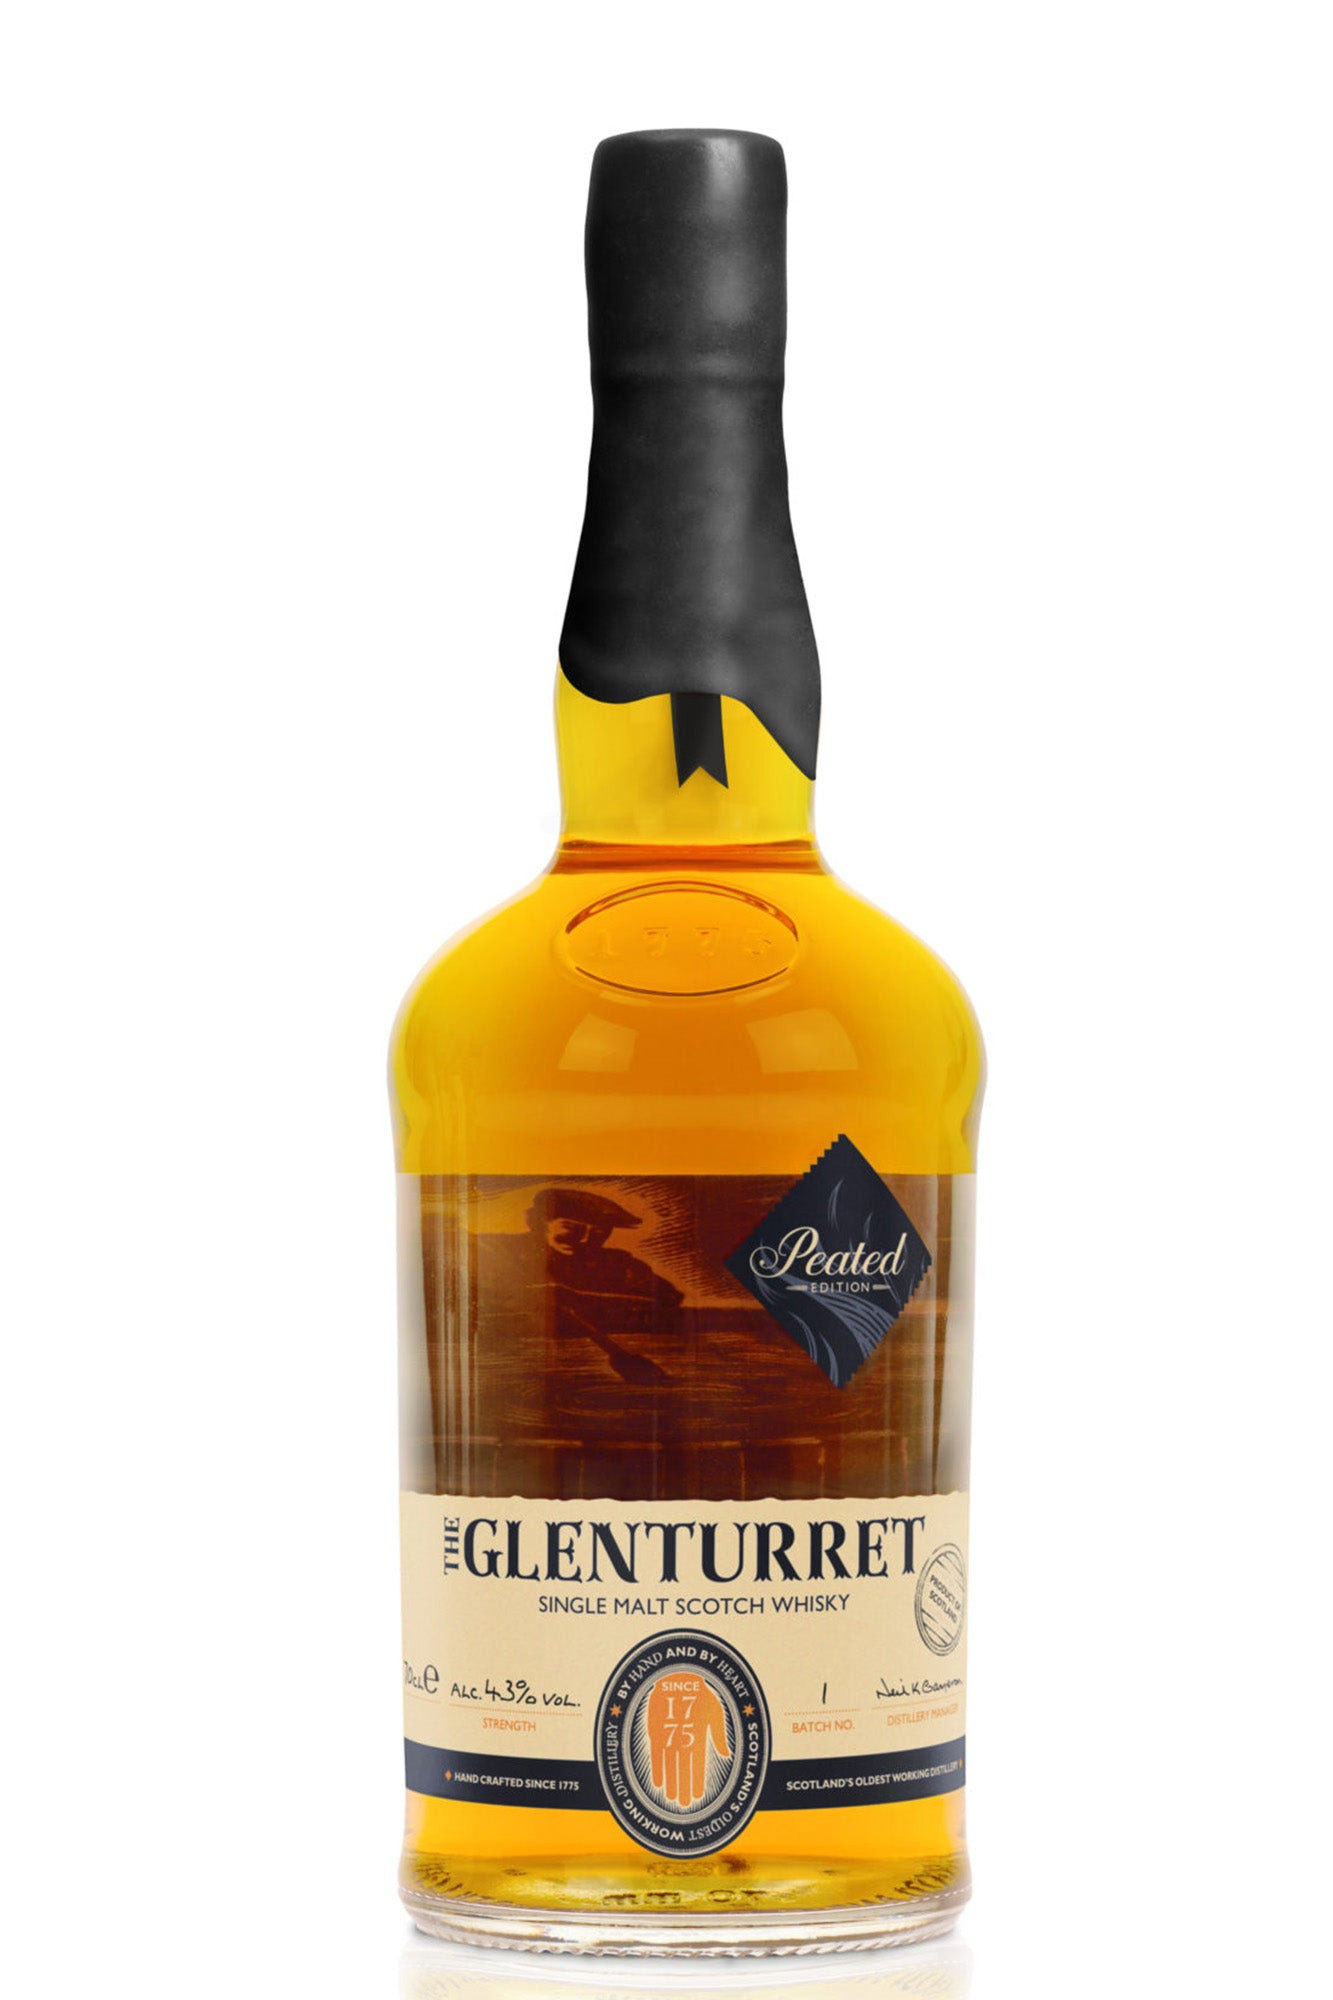 Glenturret Peated single malt